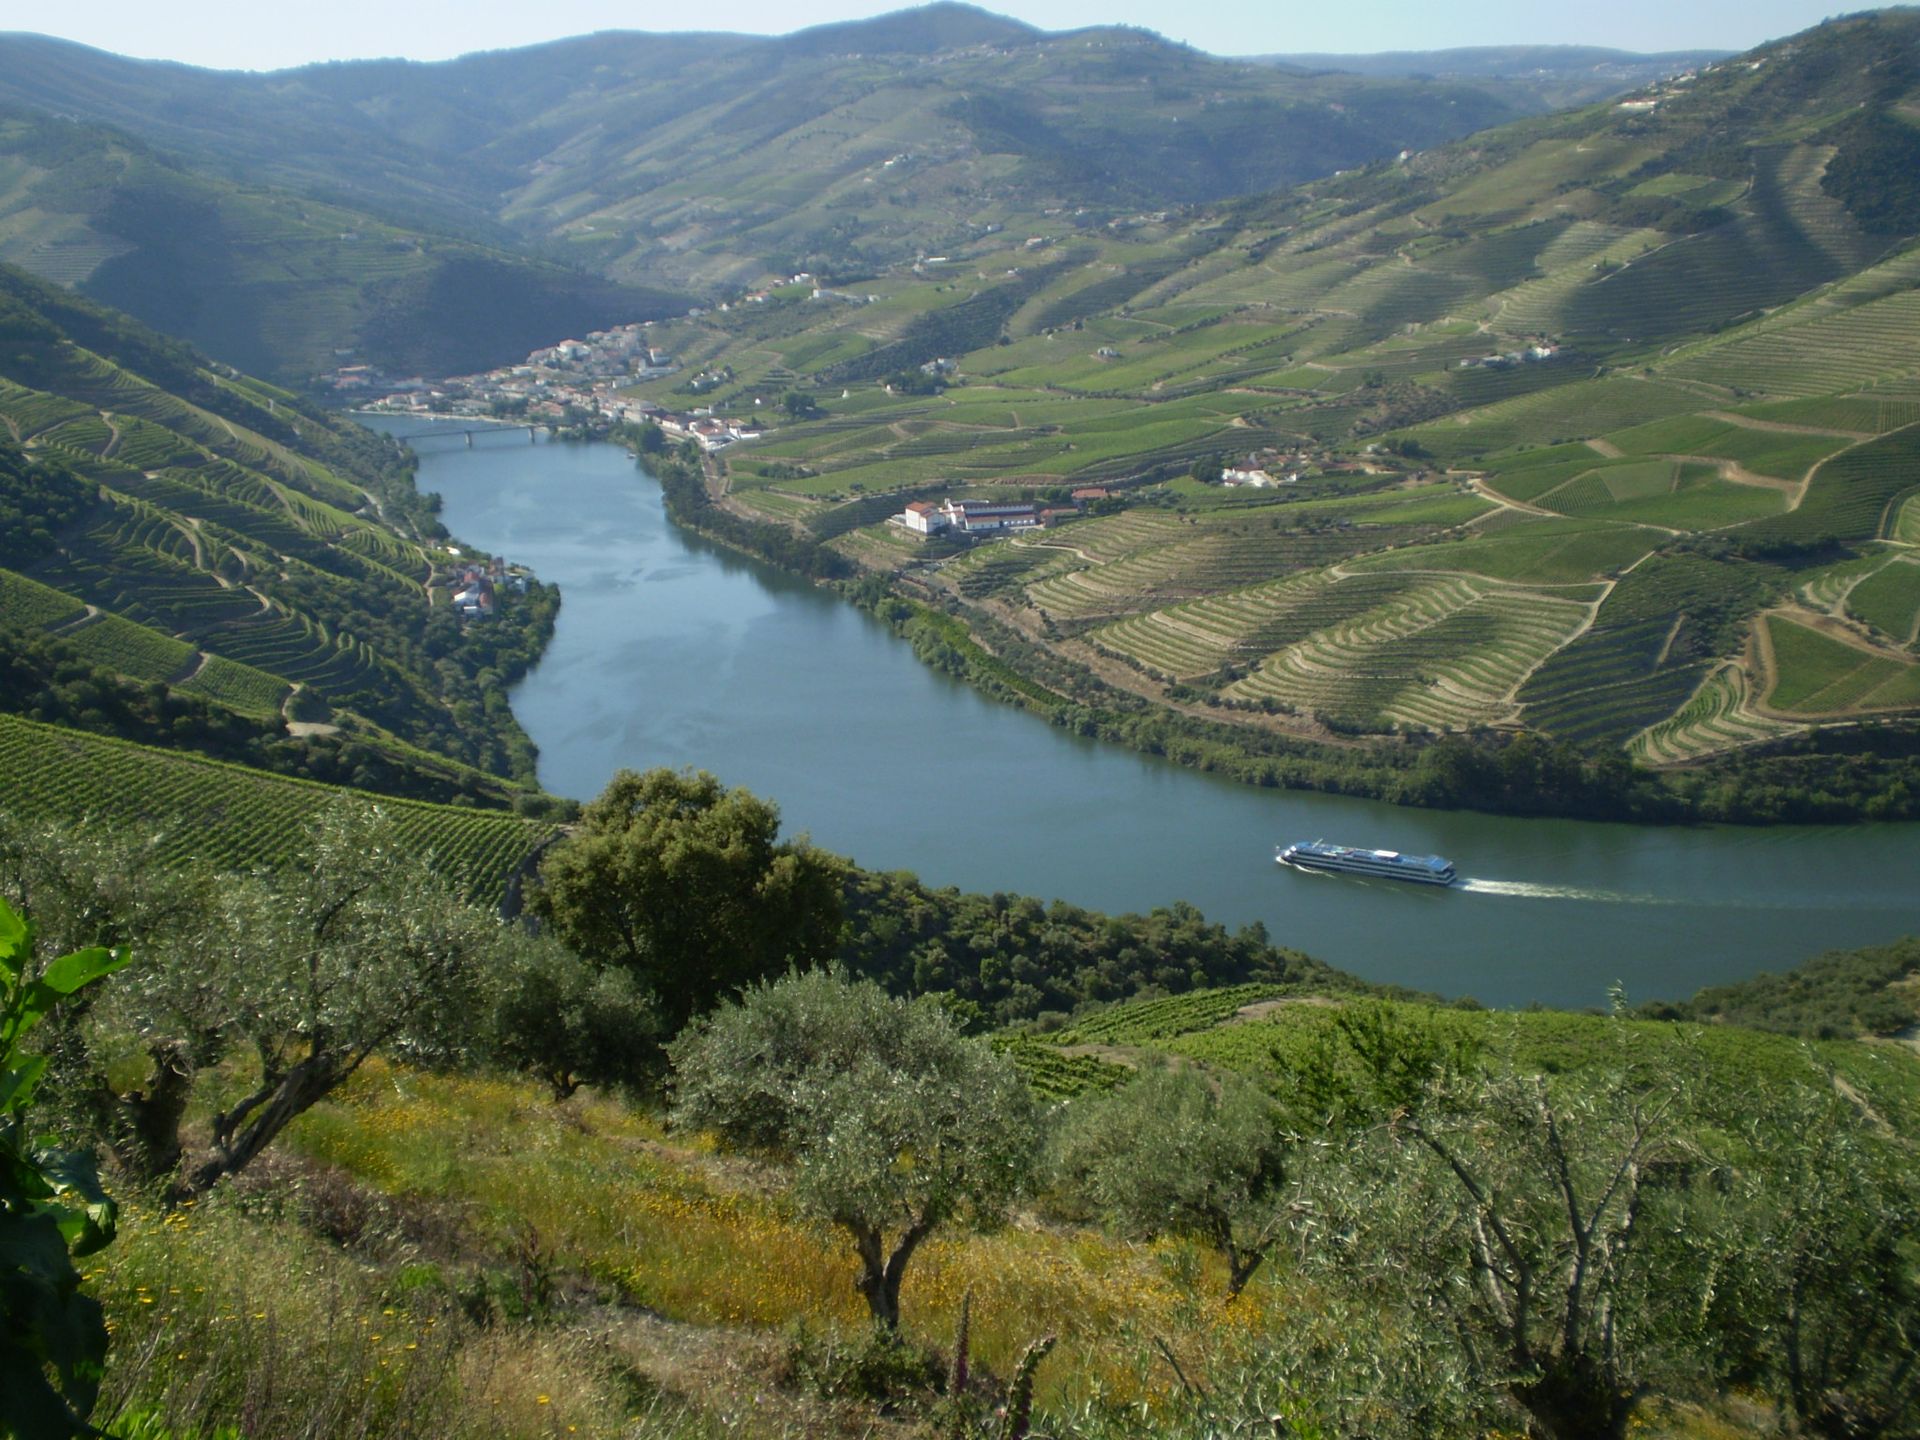 barco no rio douro serpenteia as montanhas cheias de vinhas no alto douro vinhateiro